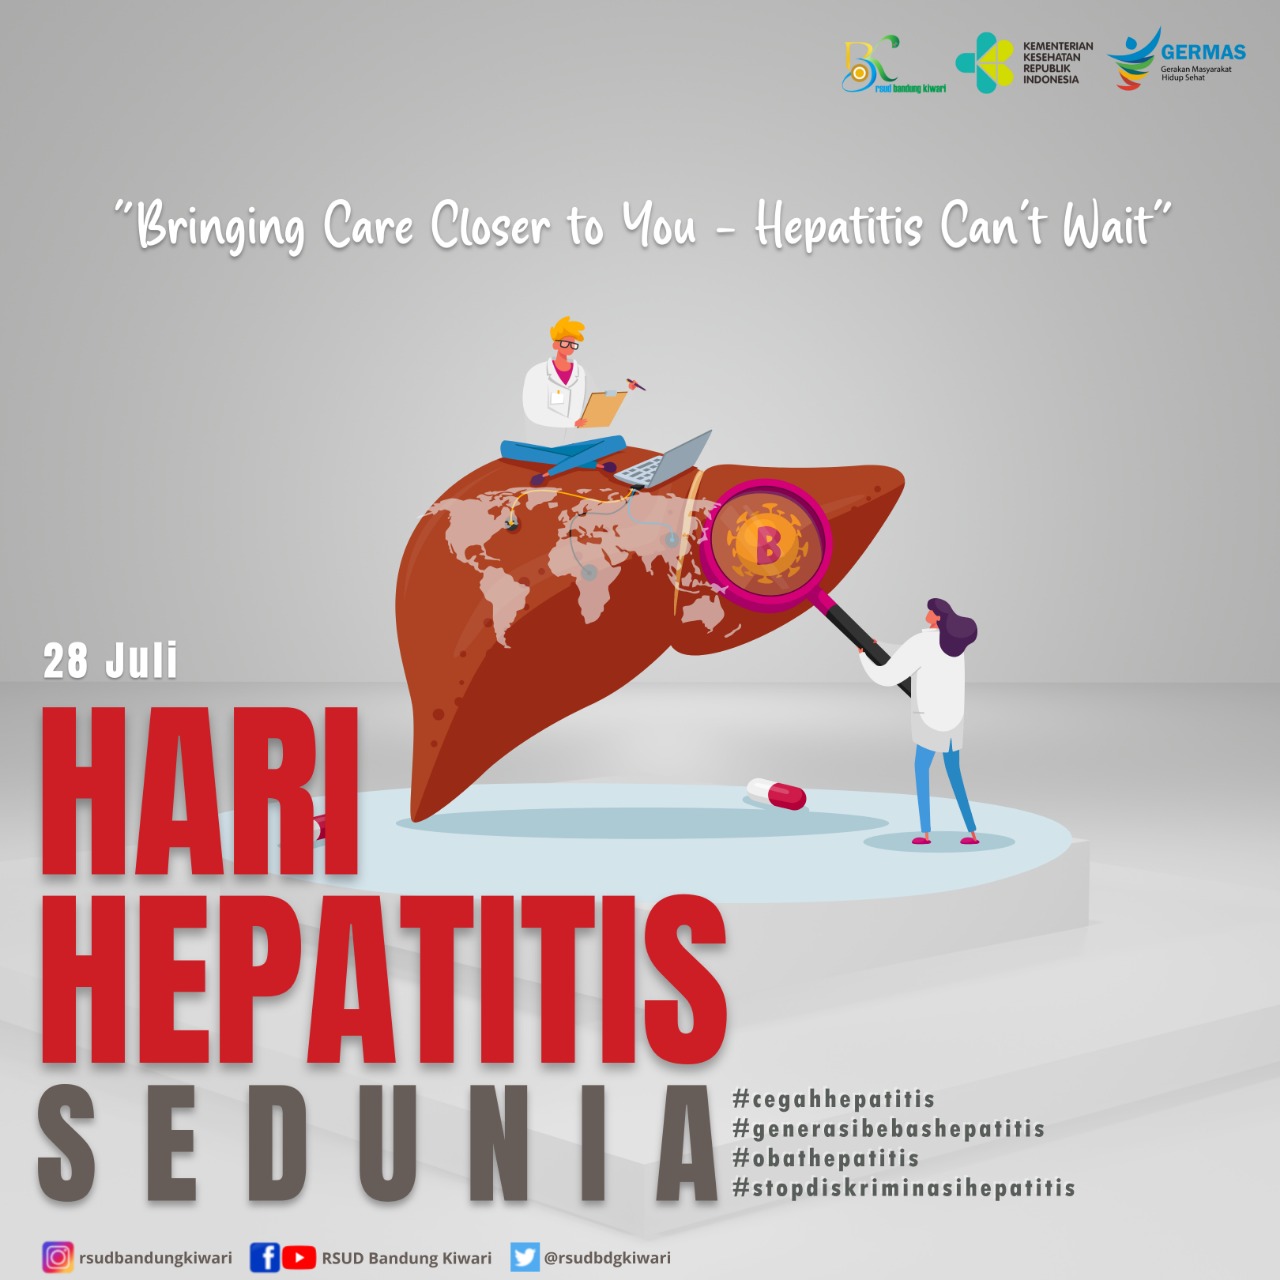 RSUD Bandung Kiwari on Twitter: "Hepatitis adalah peradangan pada hati